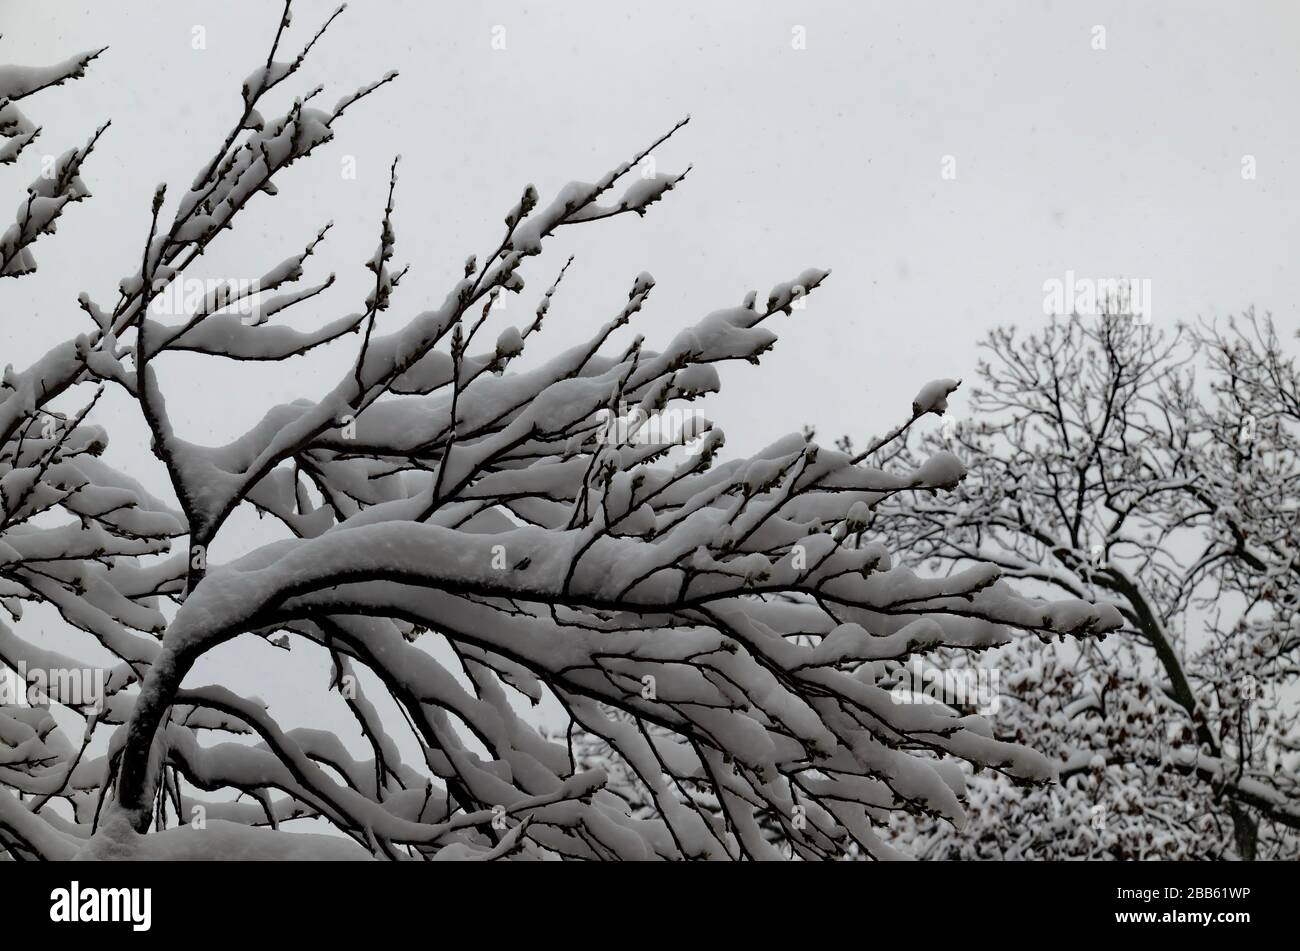 Die COVID-19-Corona-Virus-Pandemie, der Ausnahmezustand und der verzögerte, starke Schneefall an Baumzweigen, Sofia, Bulgarien Stockfoto